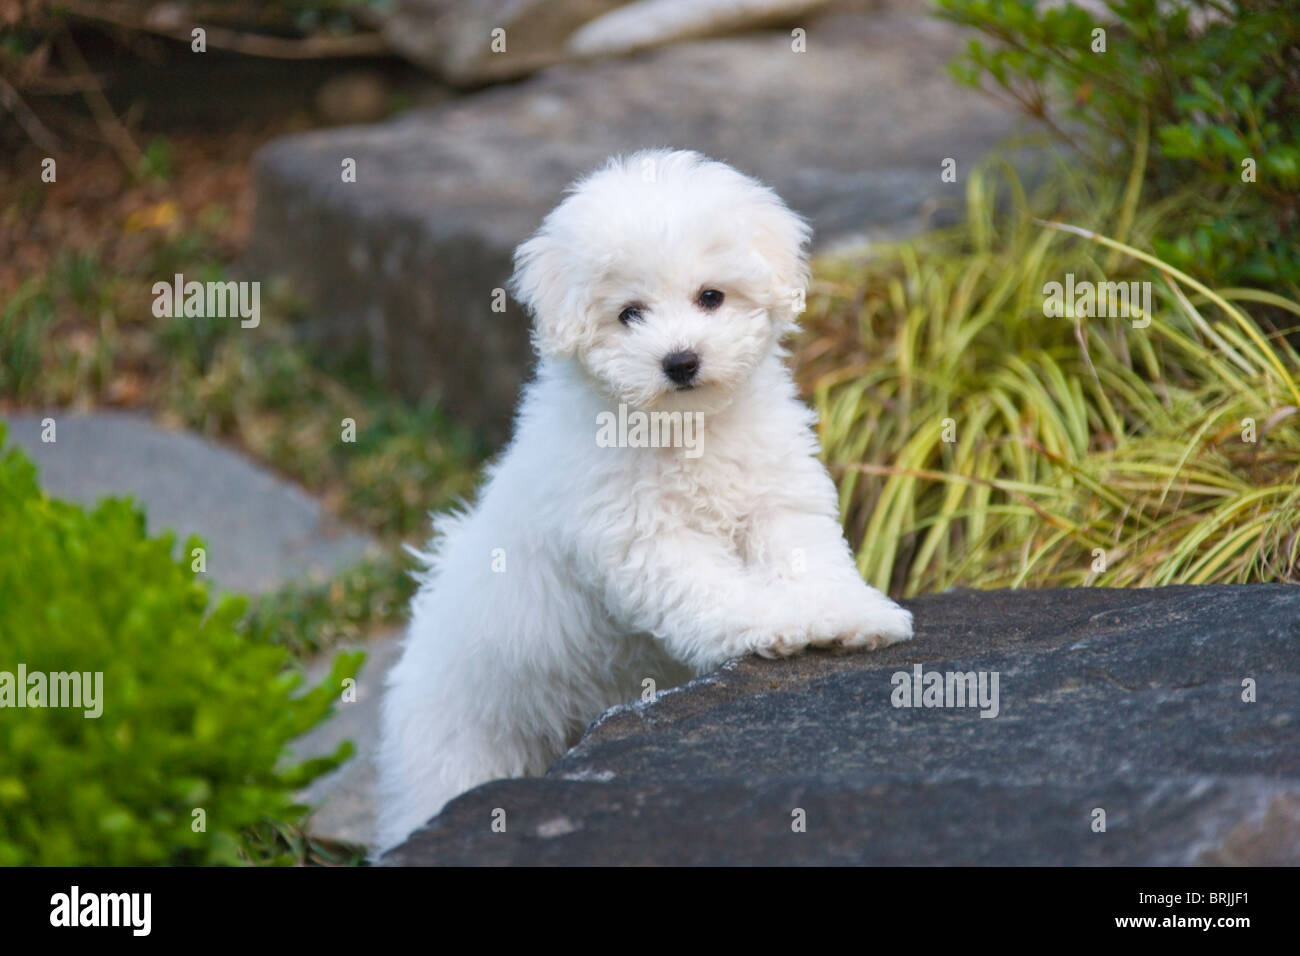 Bichon Frise puppy in the garden Stock Photo